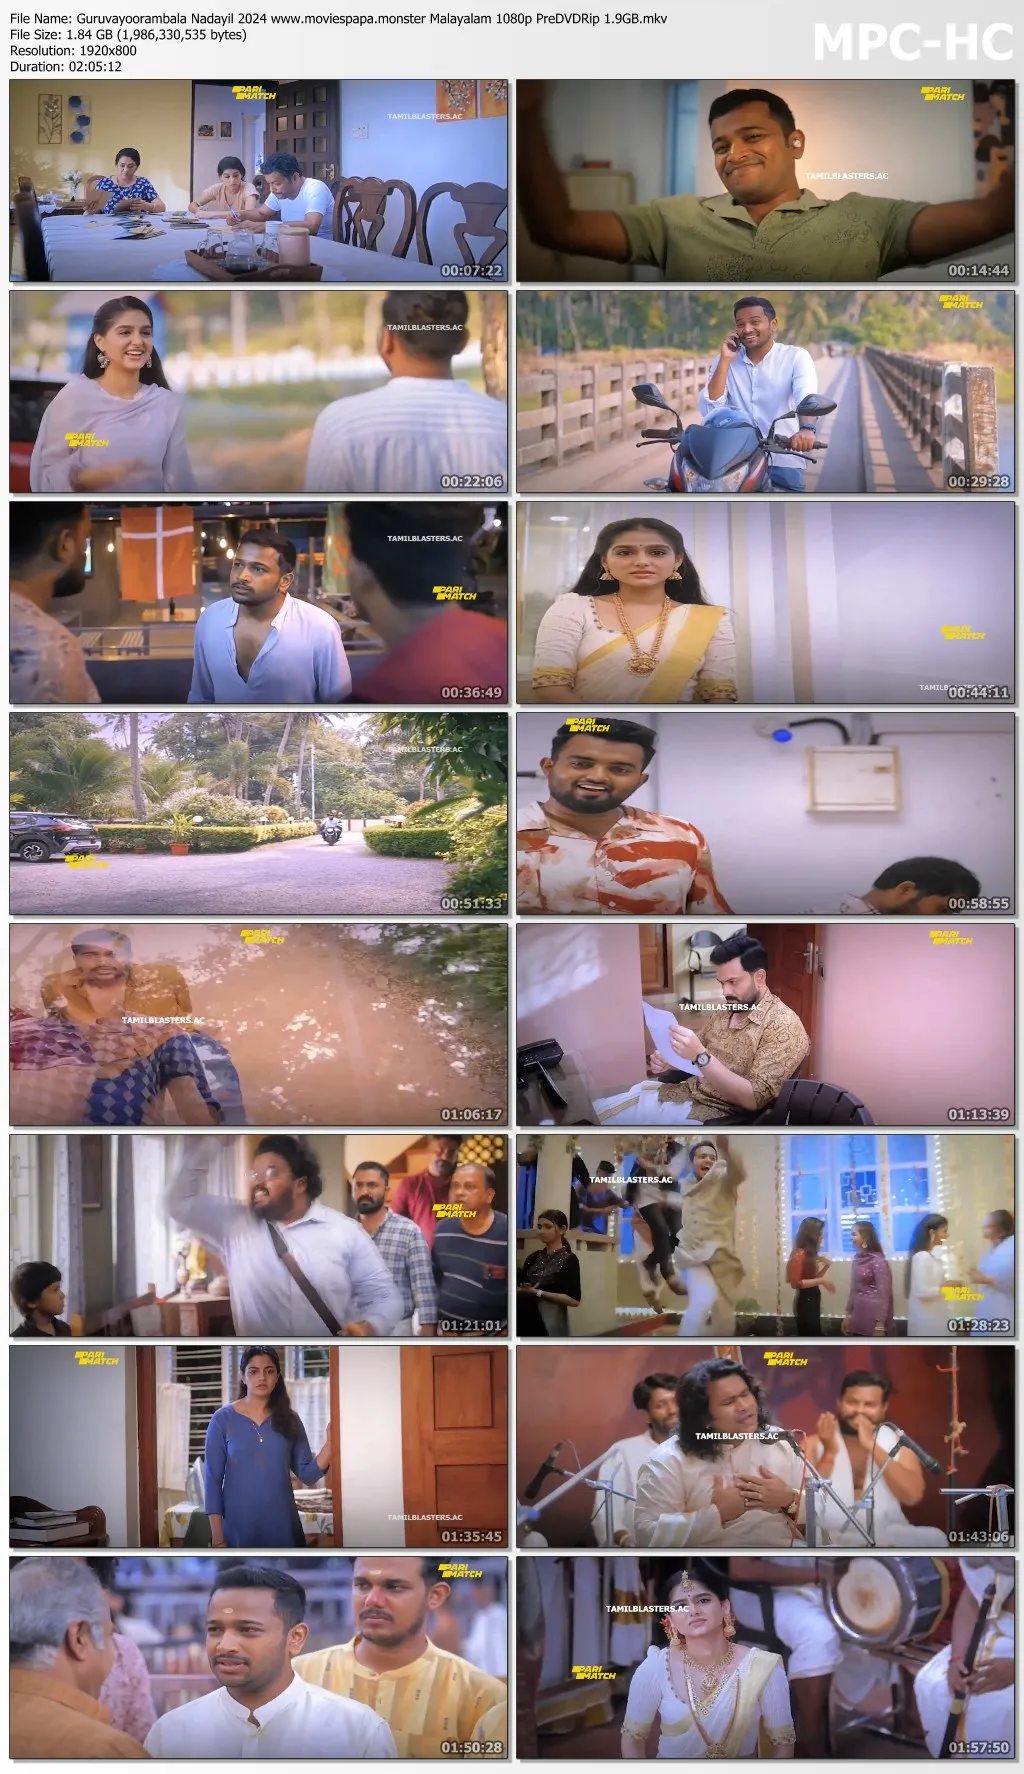 Guruvayoorambala Nadayil 2024 Malayalam 1080p | 720p | 480p PreDVDRip Download